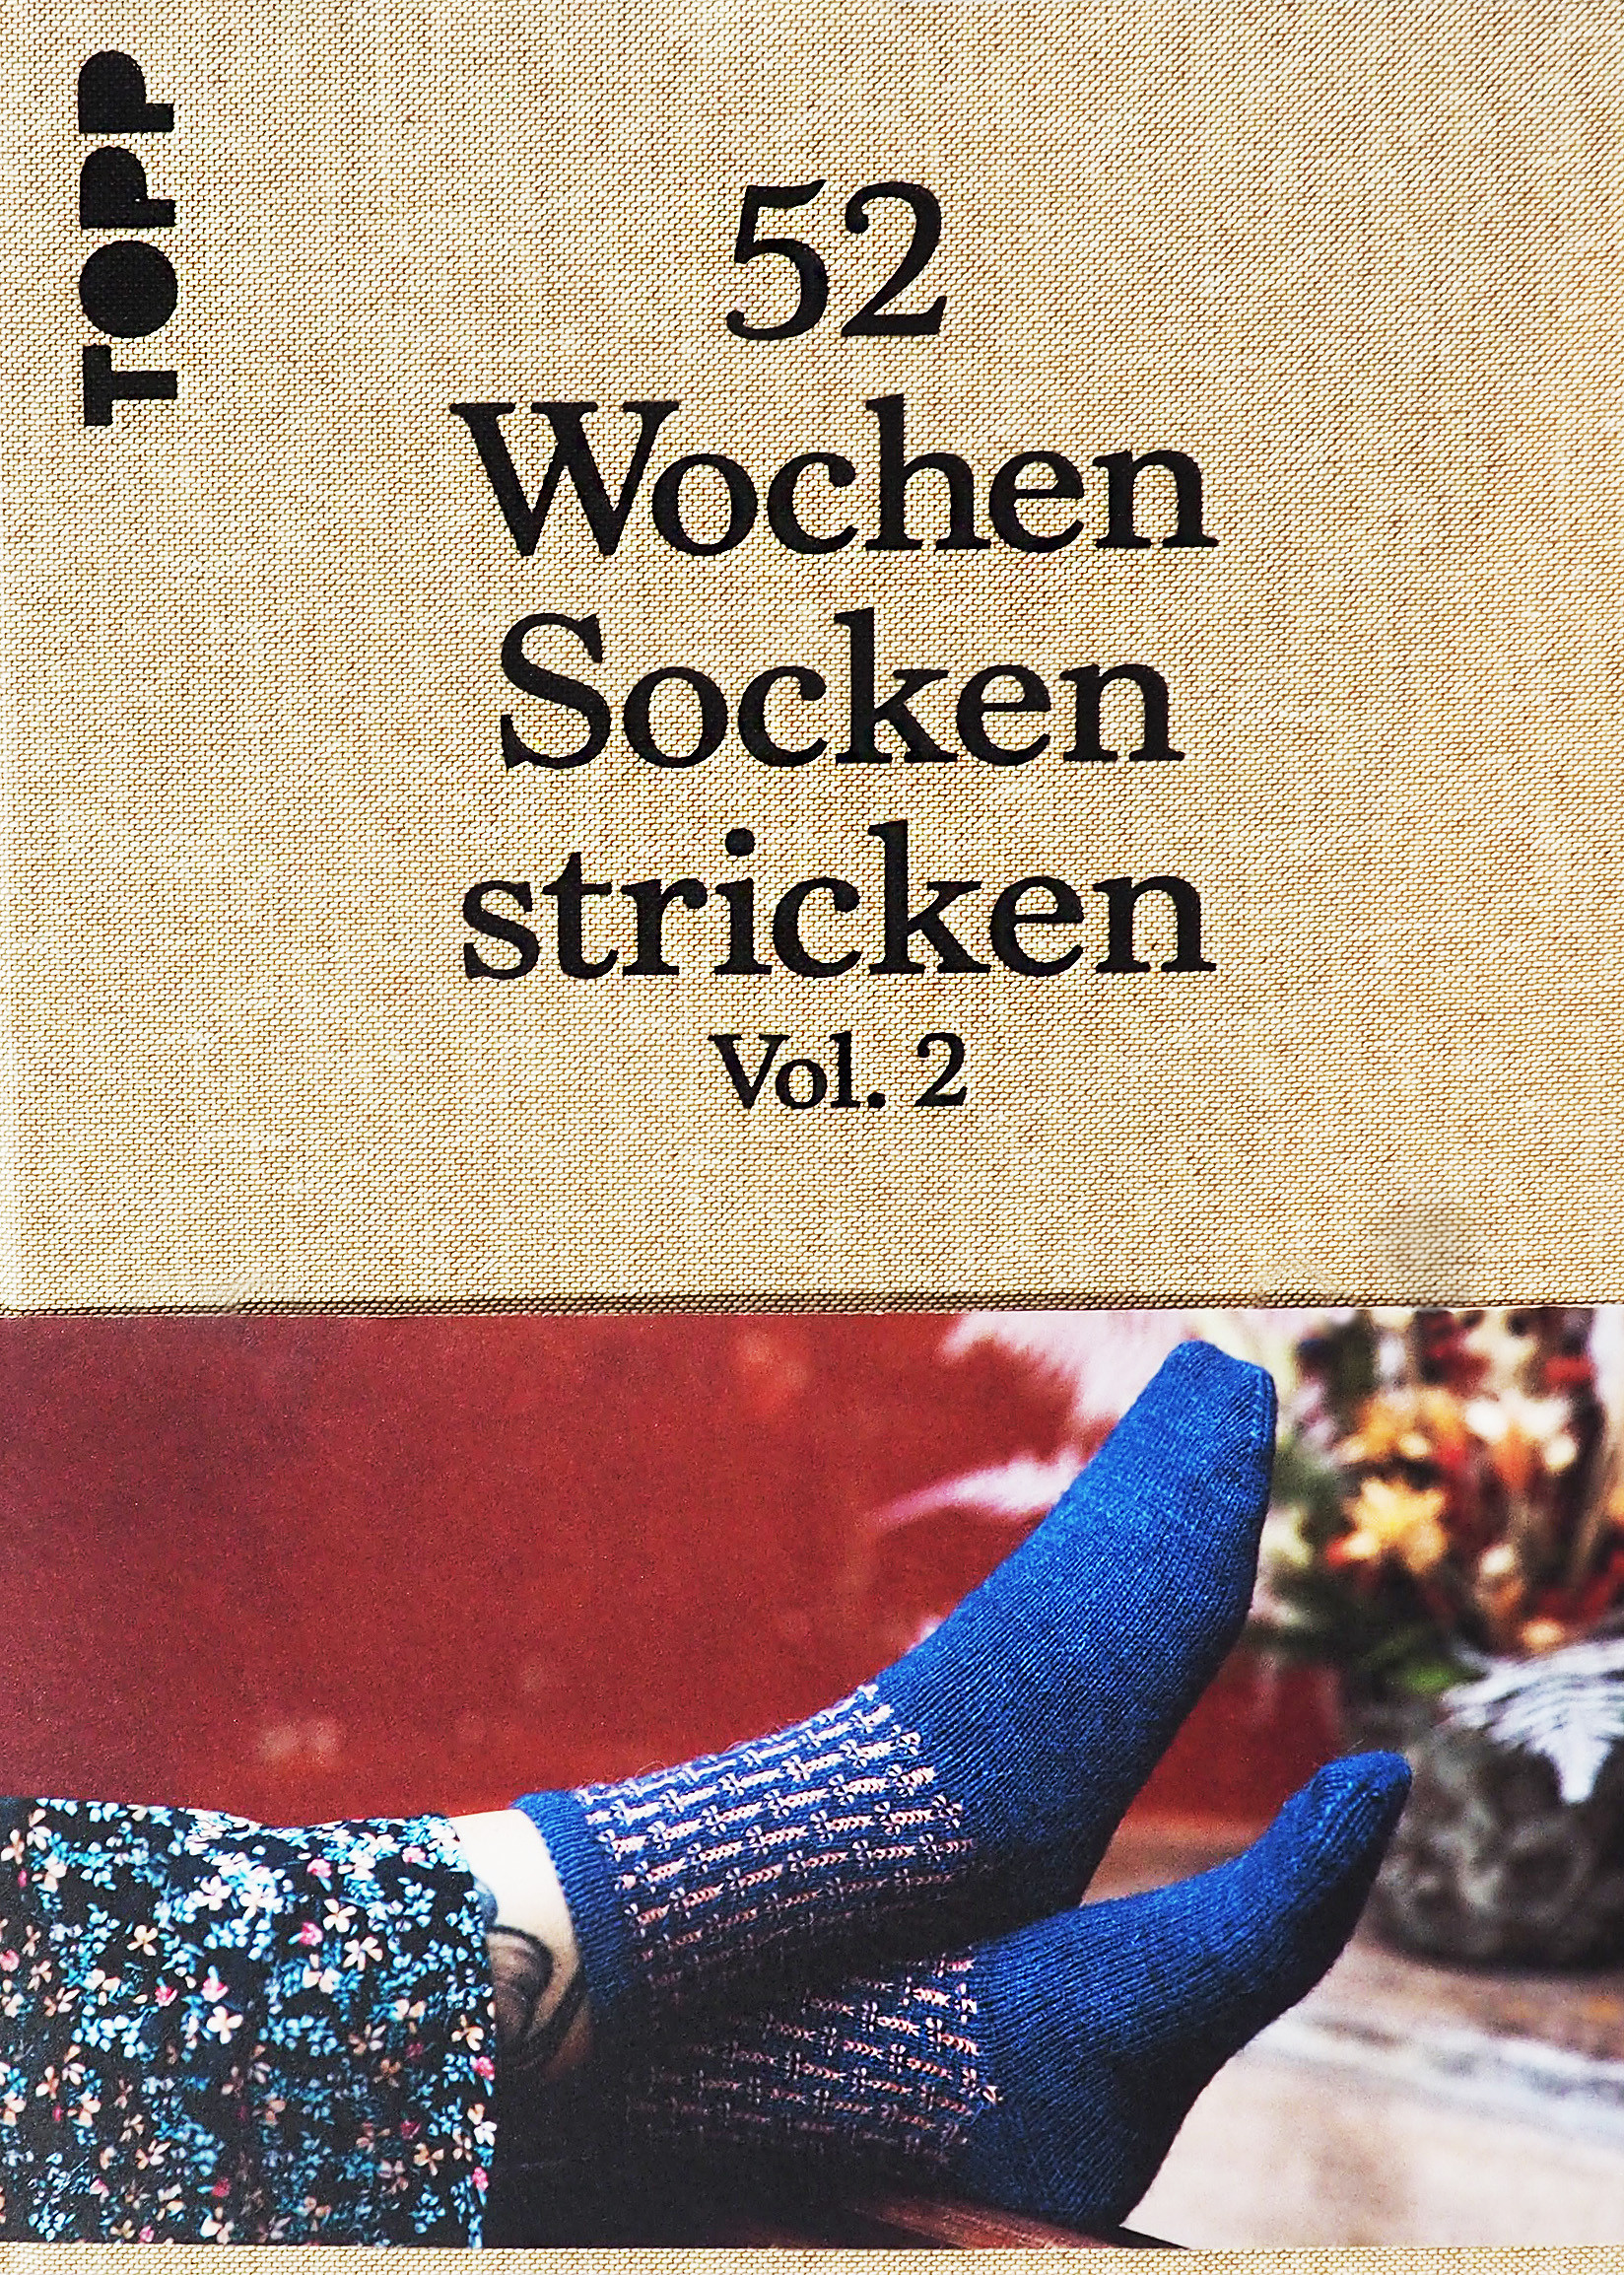 52 Wochen Socken stricken Vol. 2